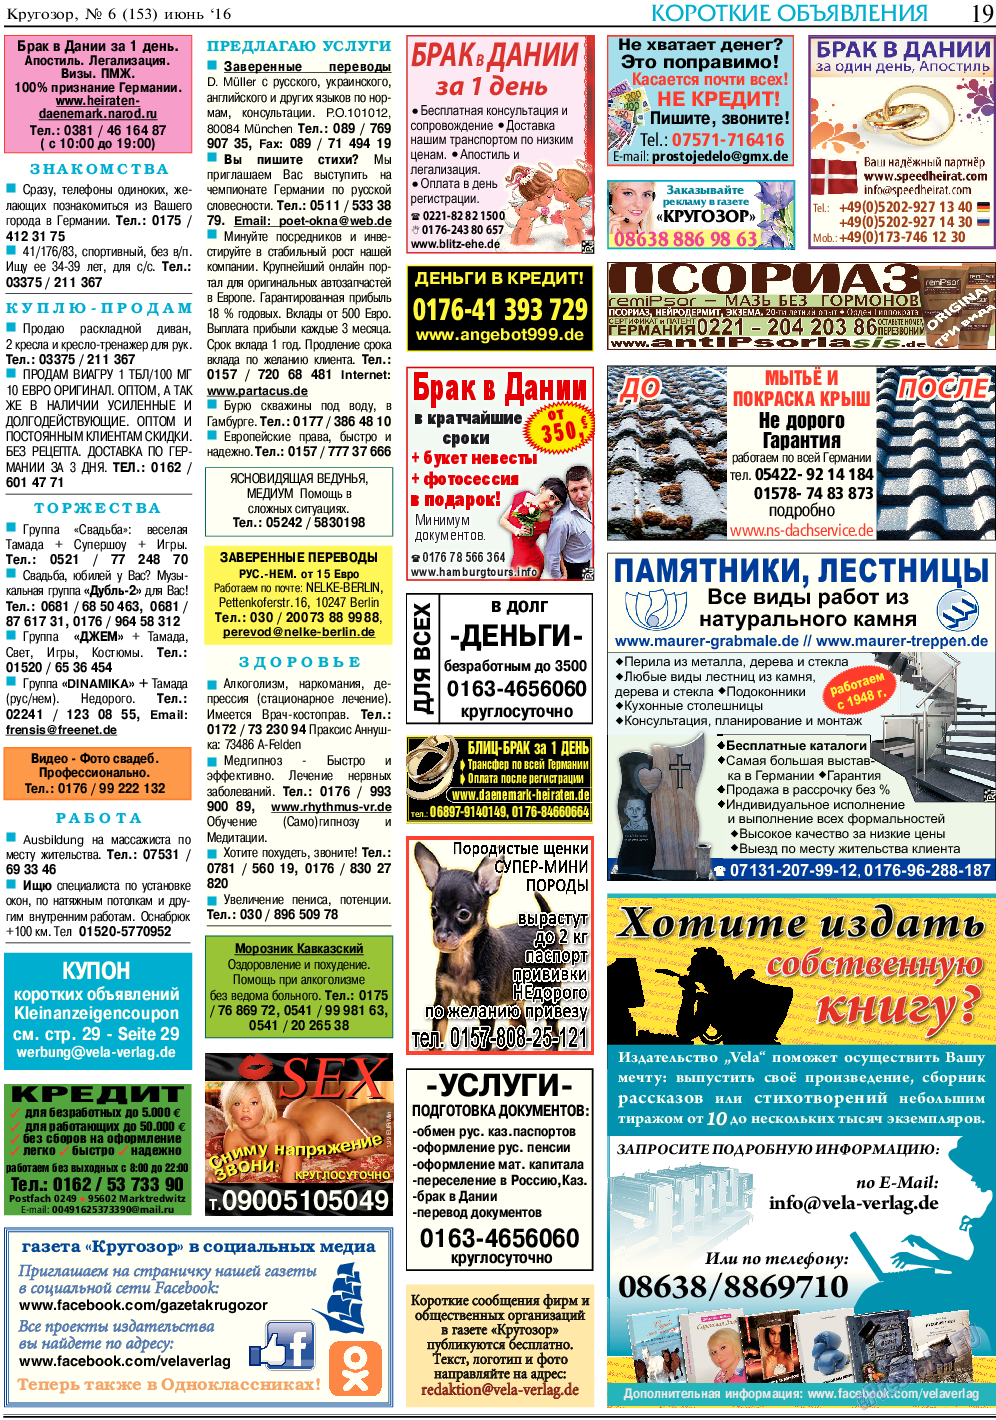 Кругозор, газета. 2016 №6 стр.19